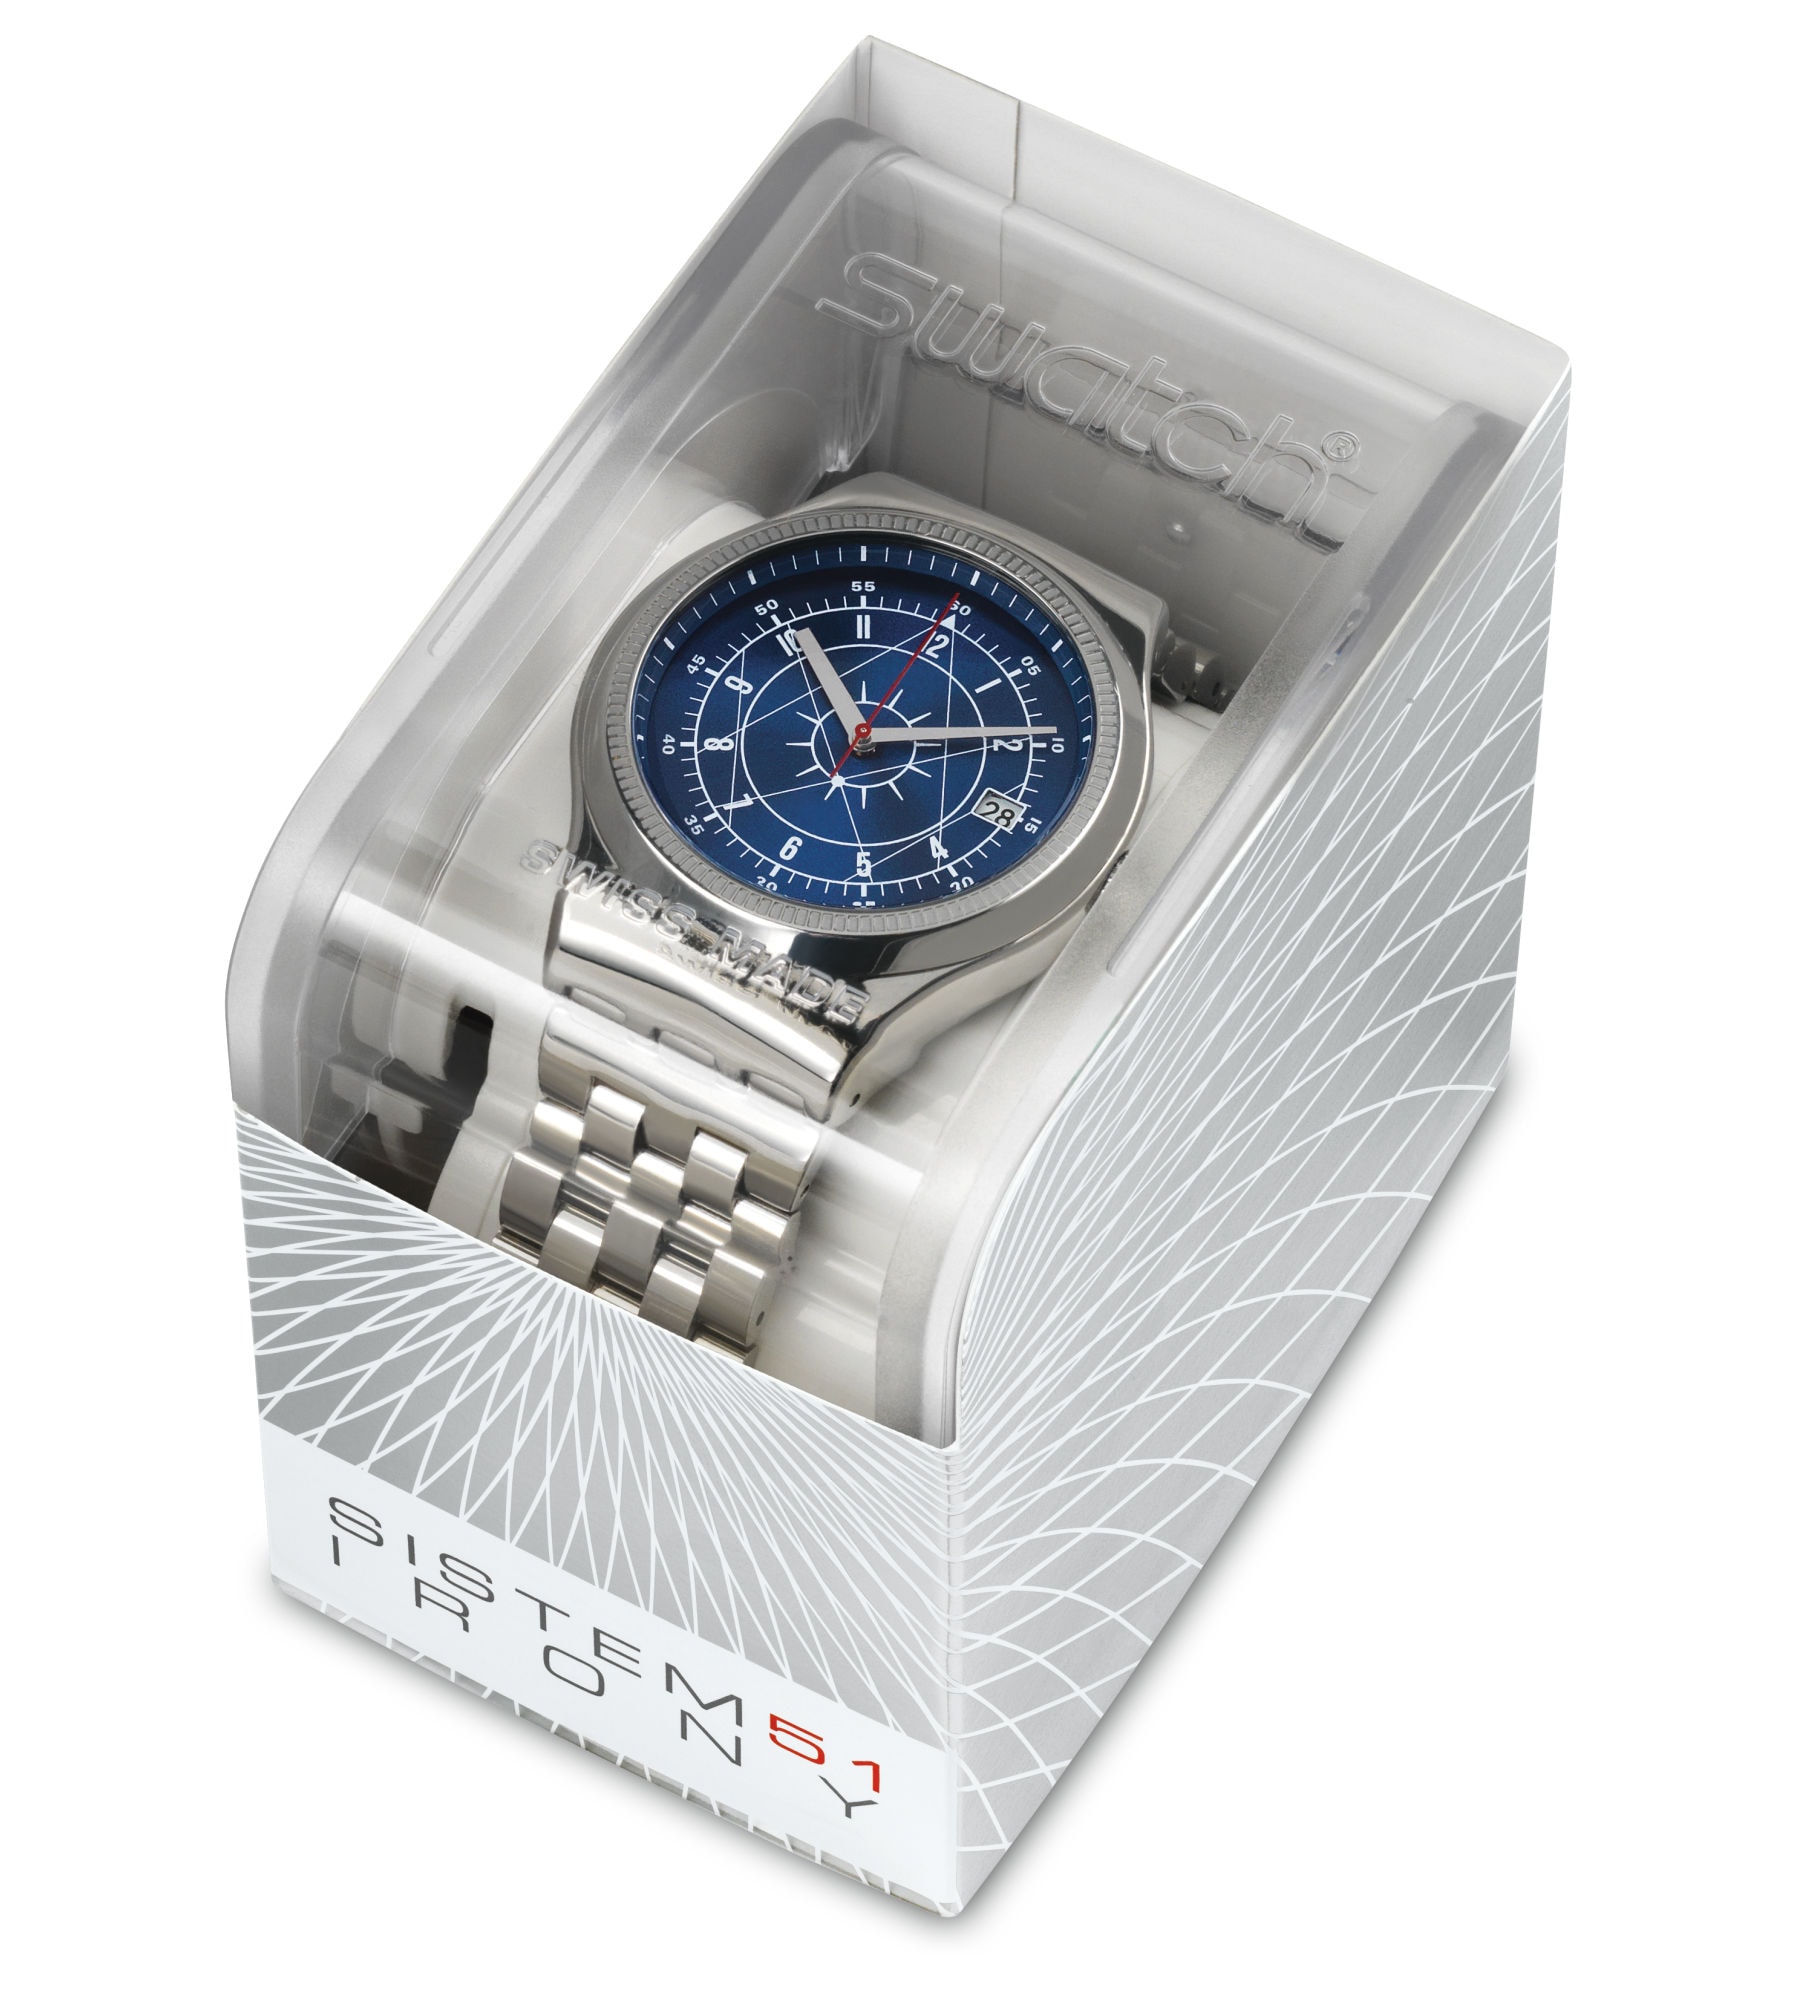 Швейцарские наручные часы с автоподзаводом. Часы Swatch yis401g. Swatch Swiss Automatic часы мужские. Swatch System 51. Swatch irony sistem 51 sistem Boreal ref. Yis401g.